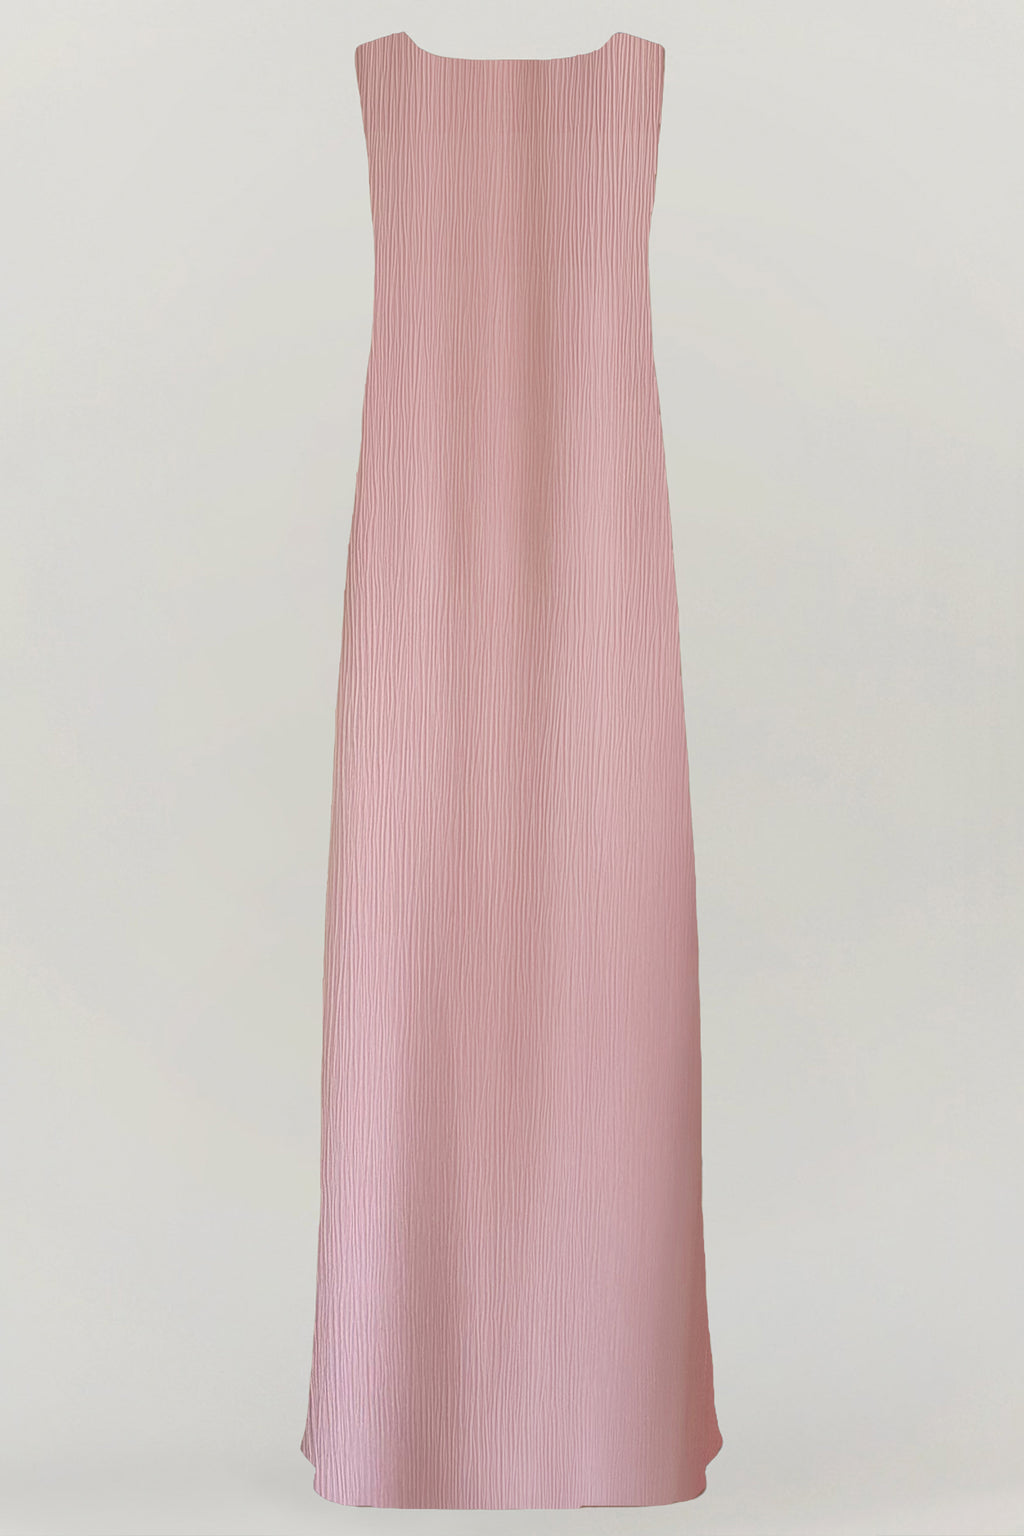 Nadera Dress